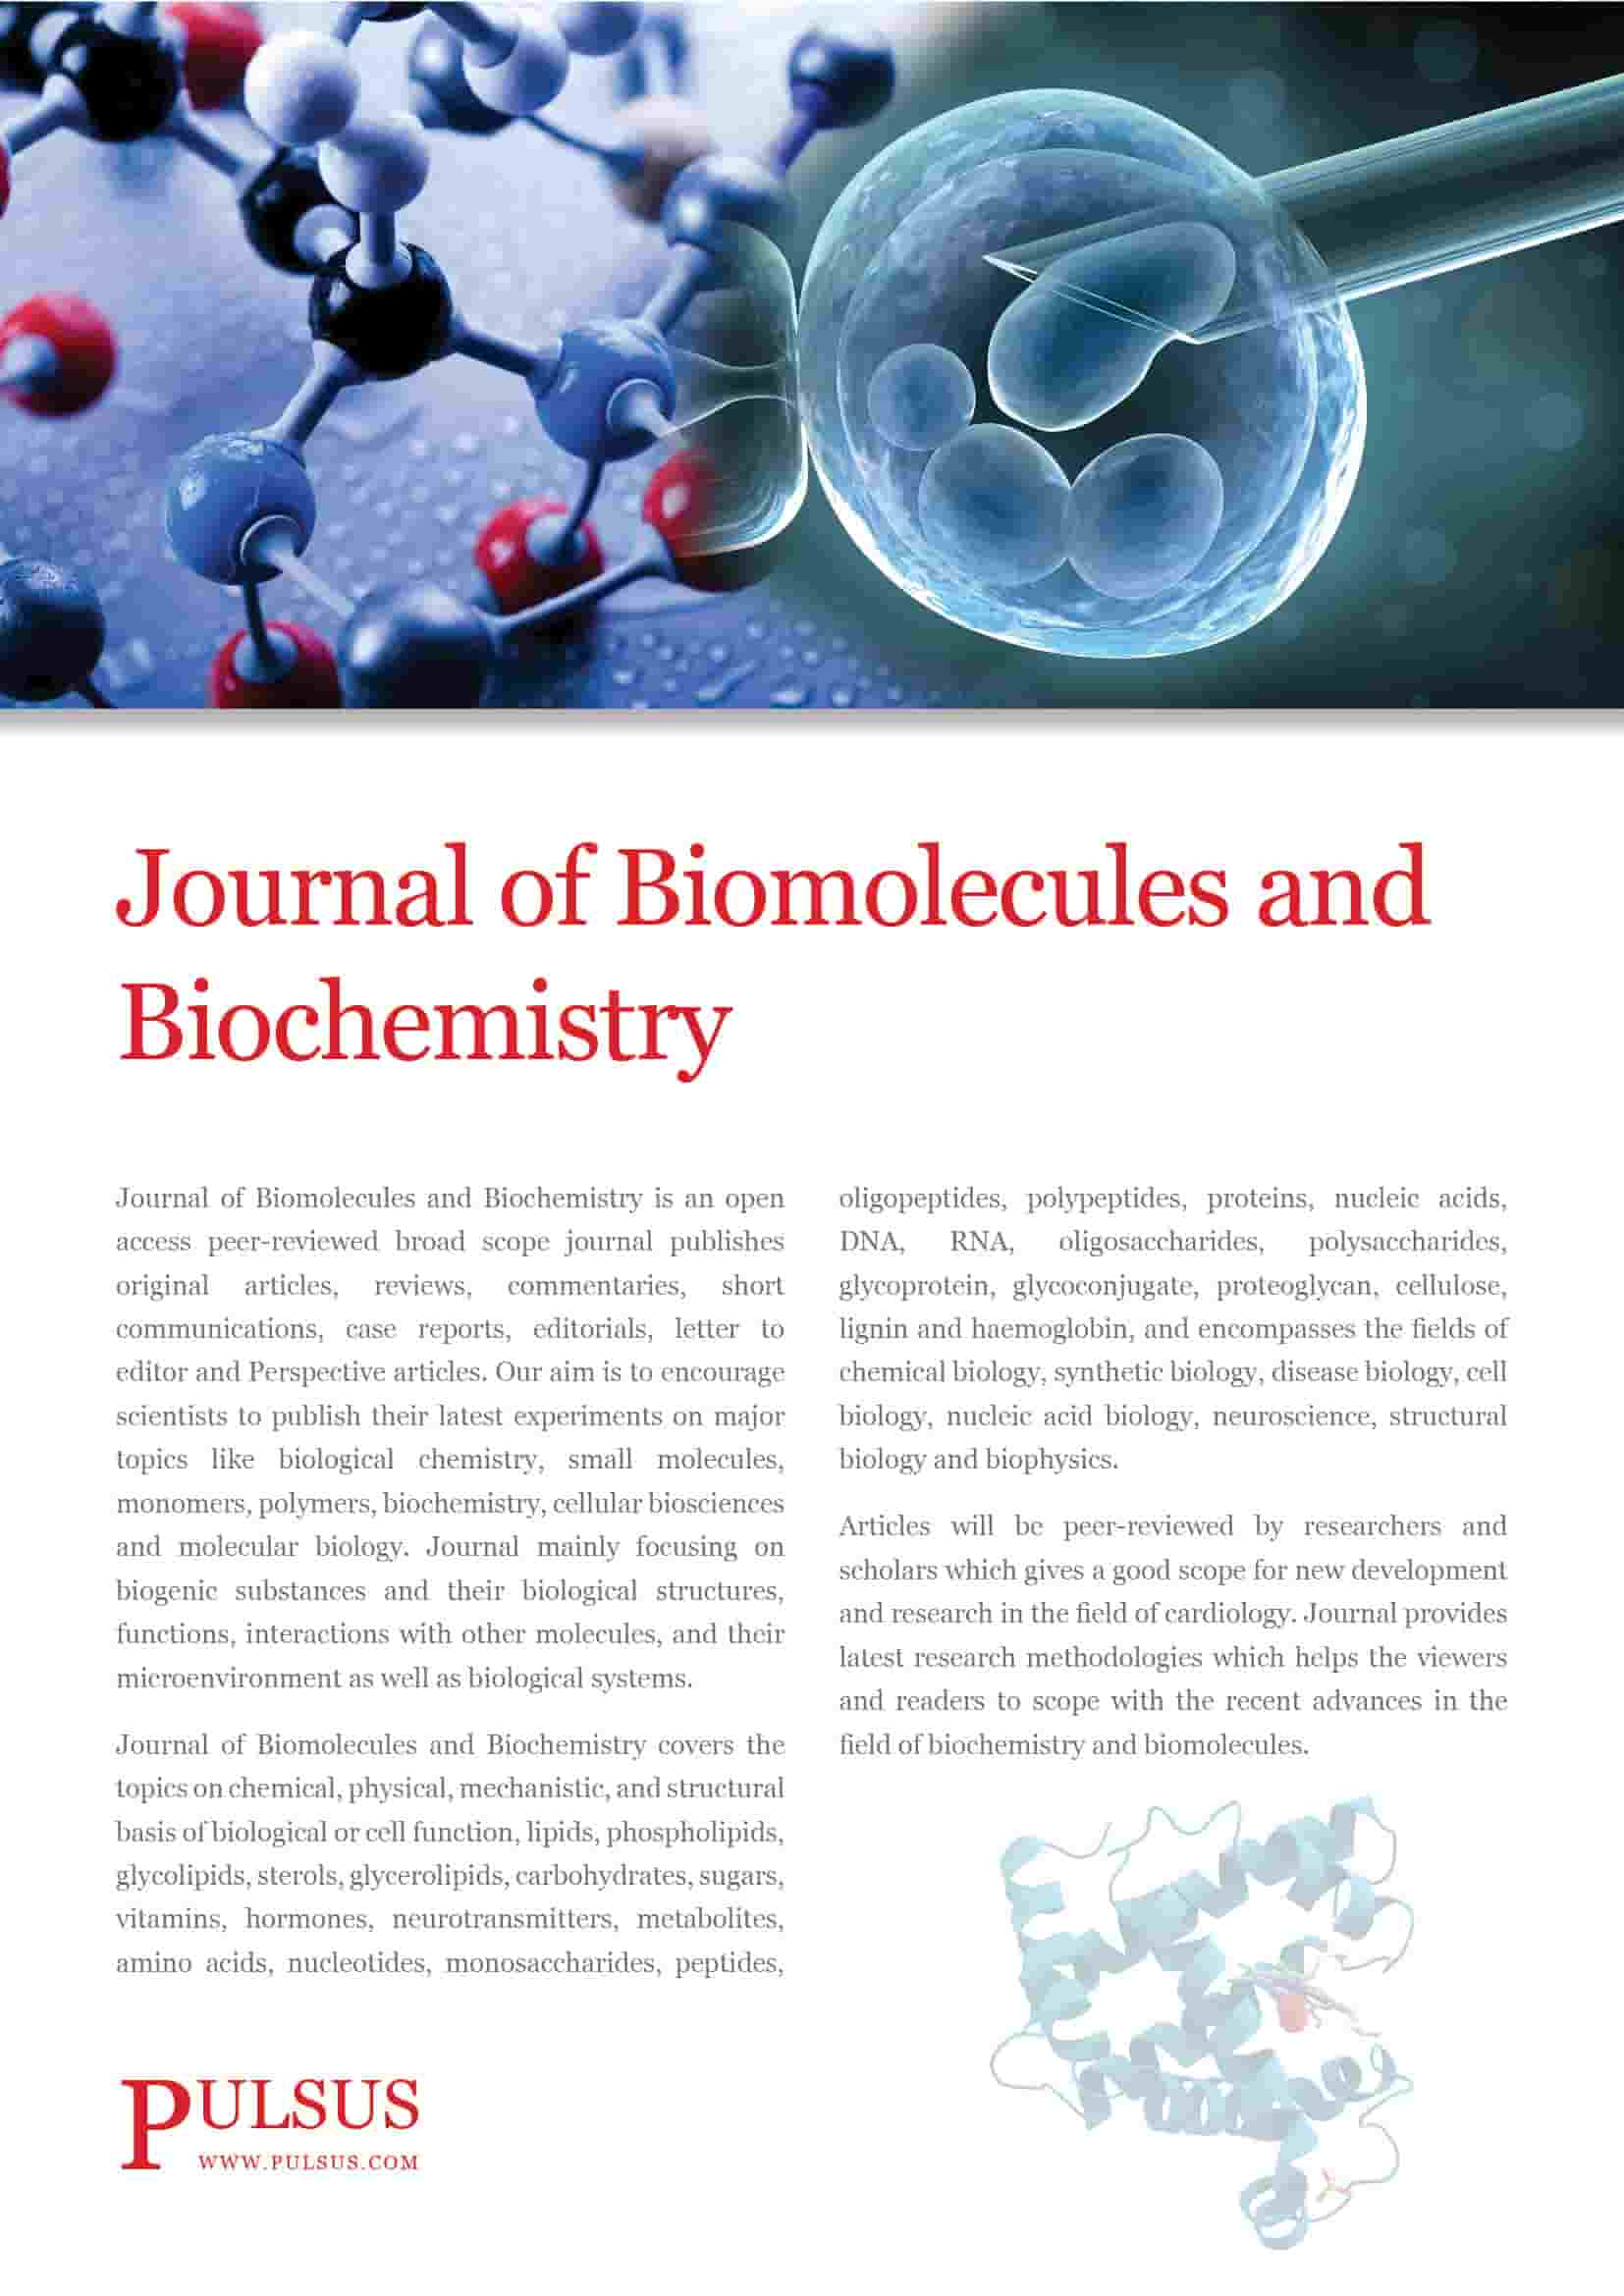 Journals of Biomolecules and Biochemistry